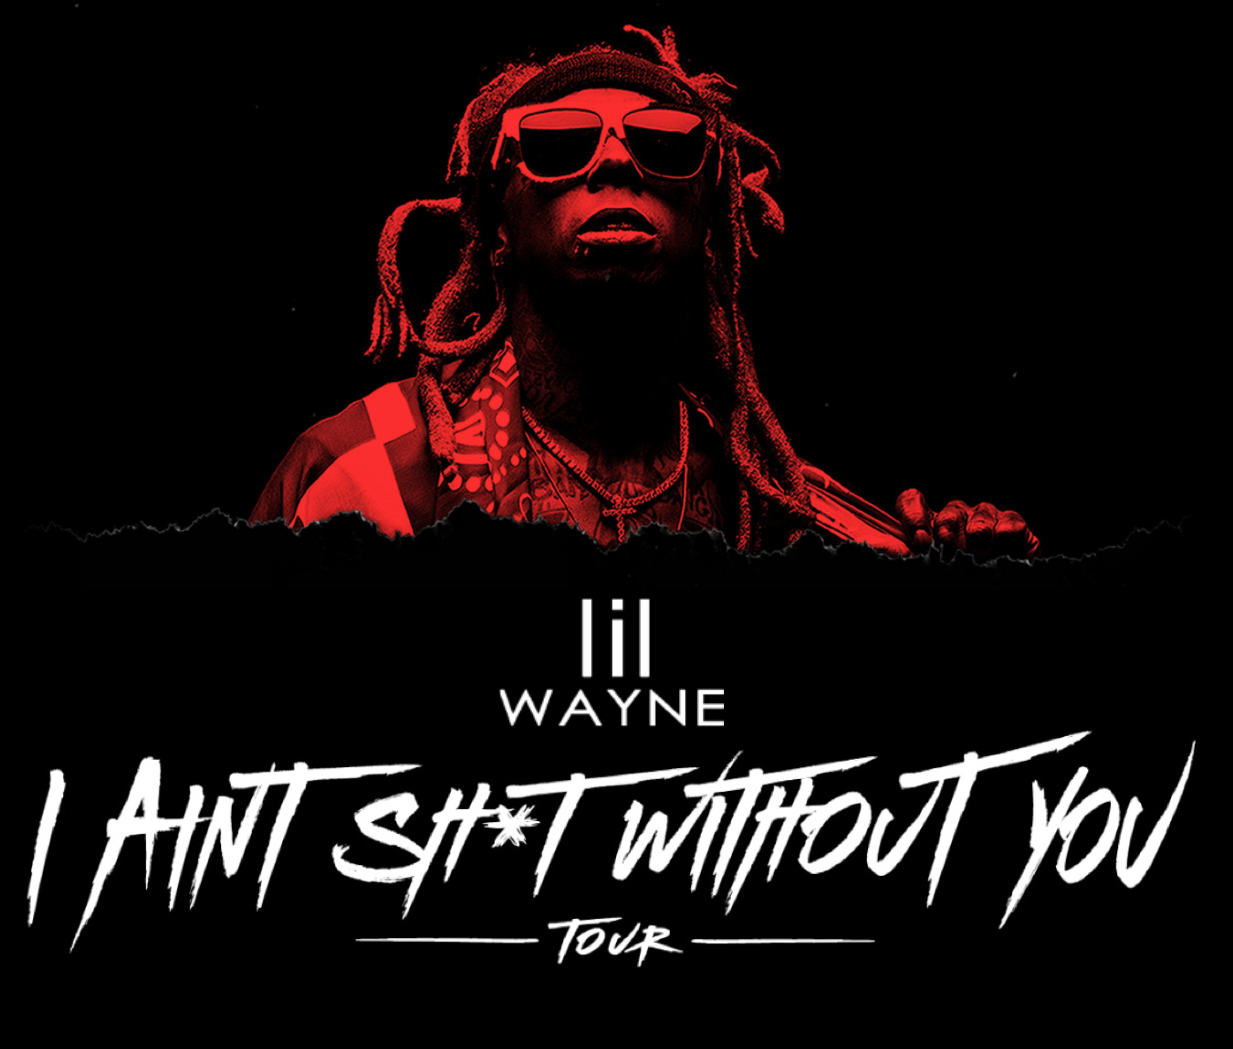 Lil Wayne Announces ‘I Ain’t Sh*t Without You’ Tour